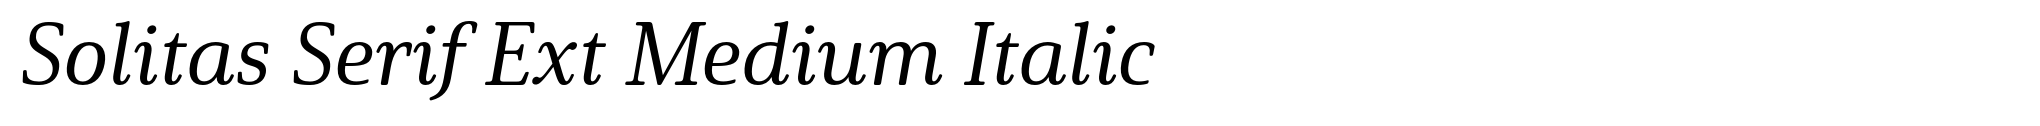 Solitas Serif Ext Medium Italic image